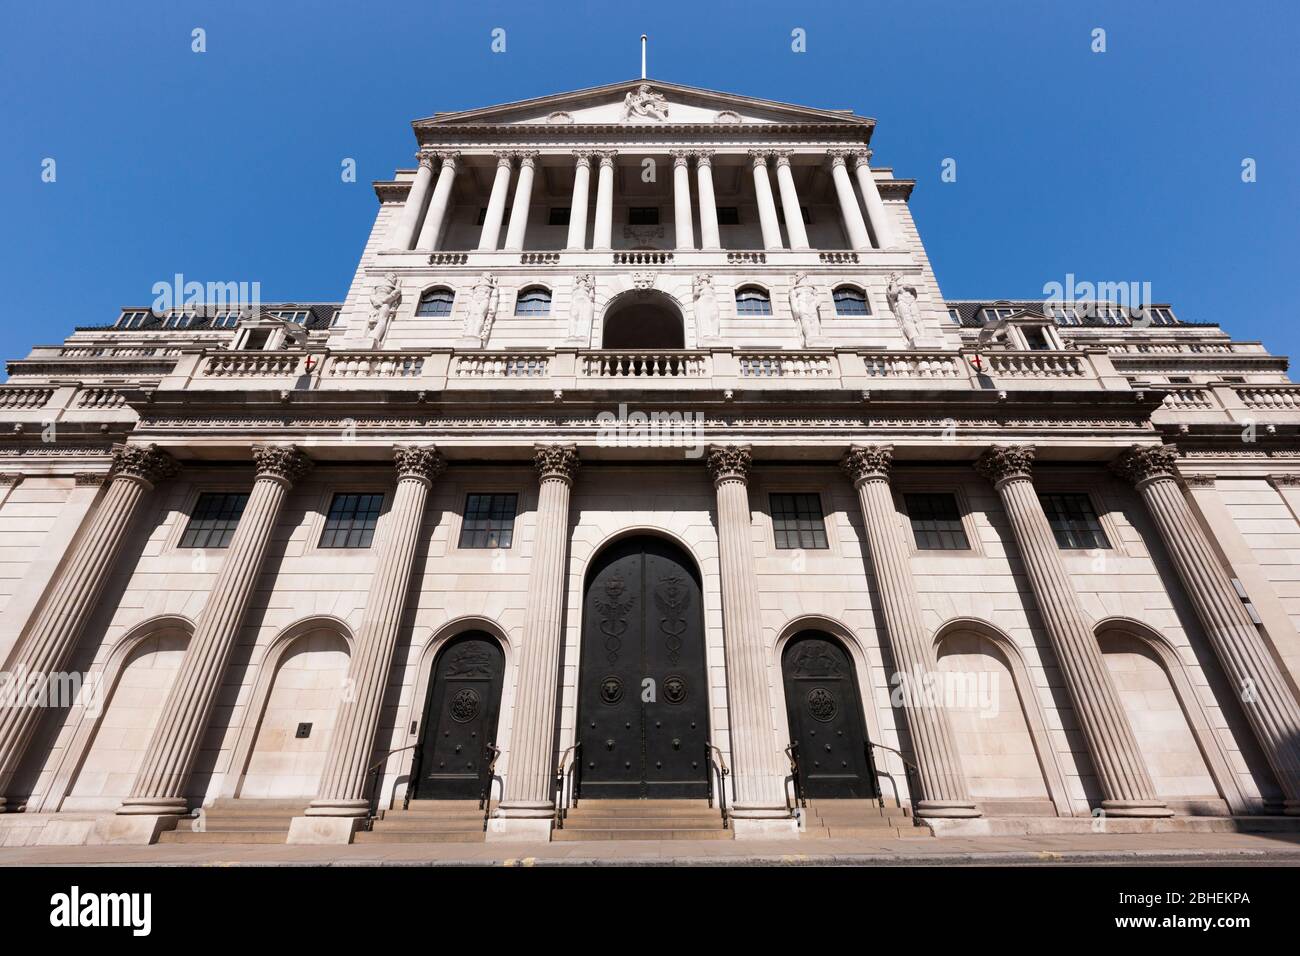 Vorderfassade des Bank of England Gebäudes auf Threadneedle St, London, EC2R 8AH. Die Bank kontrolliert die Zinssätze für Großbritannien. (118) Stockfoto